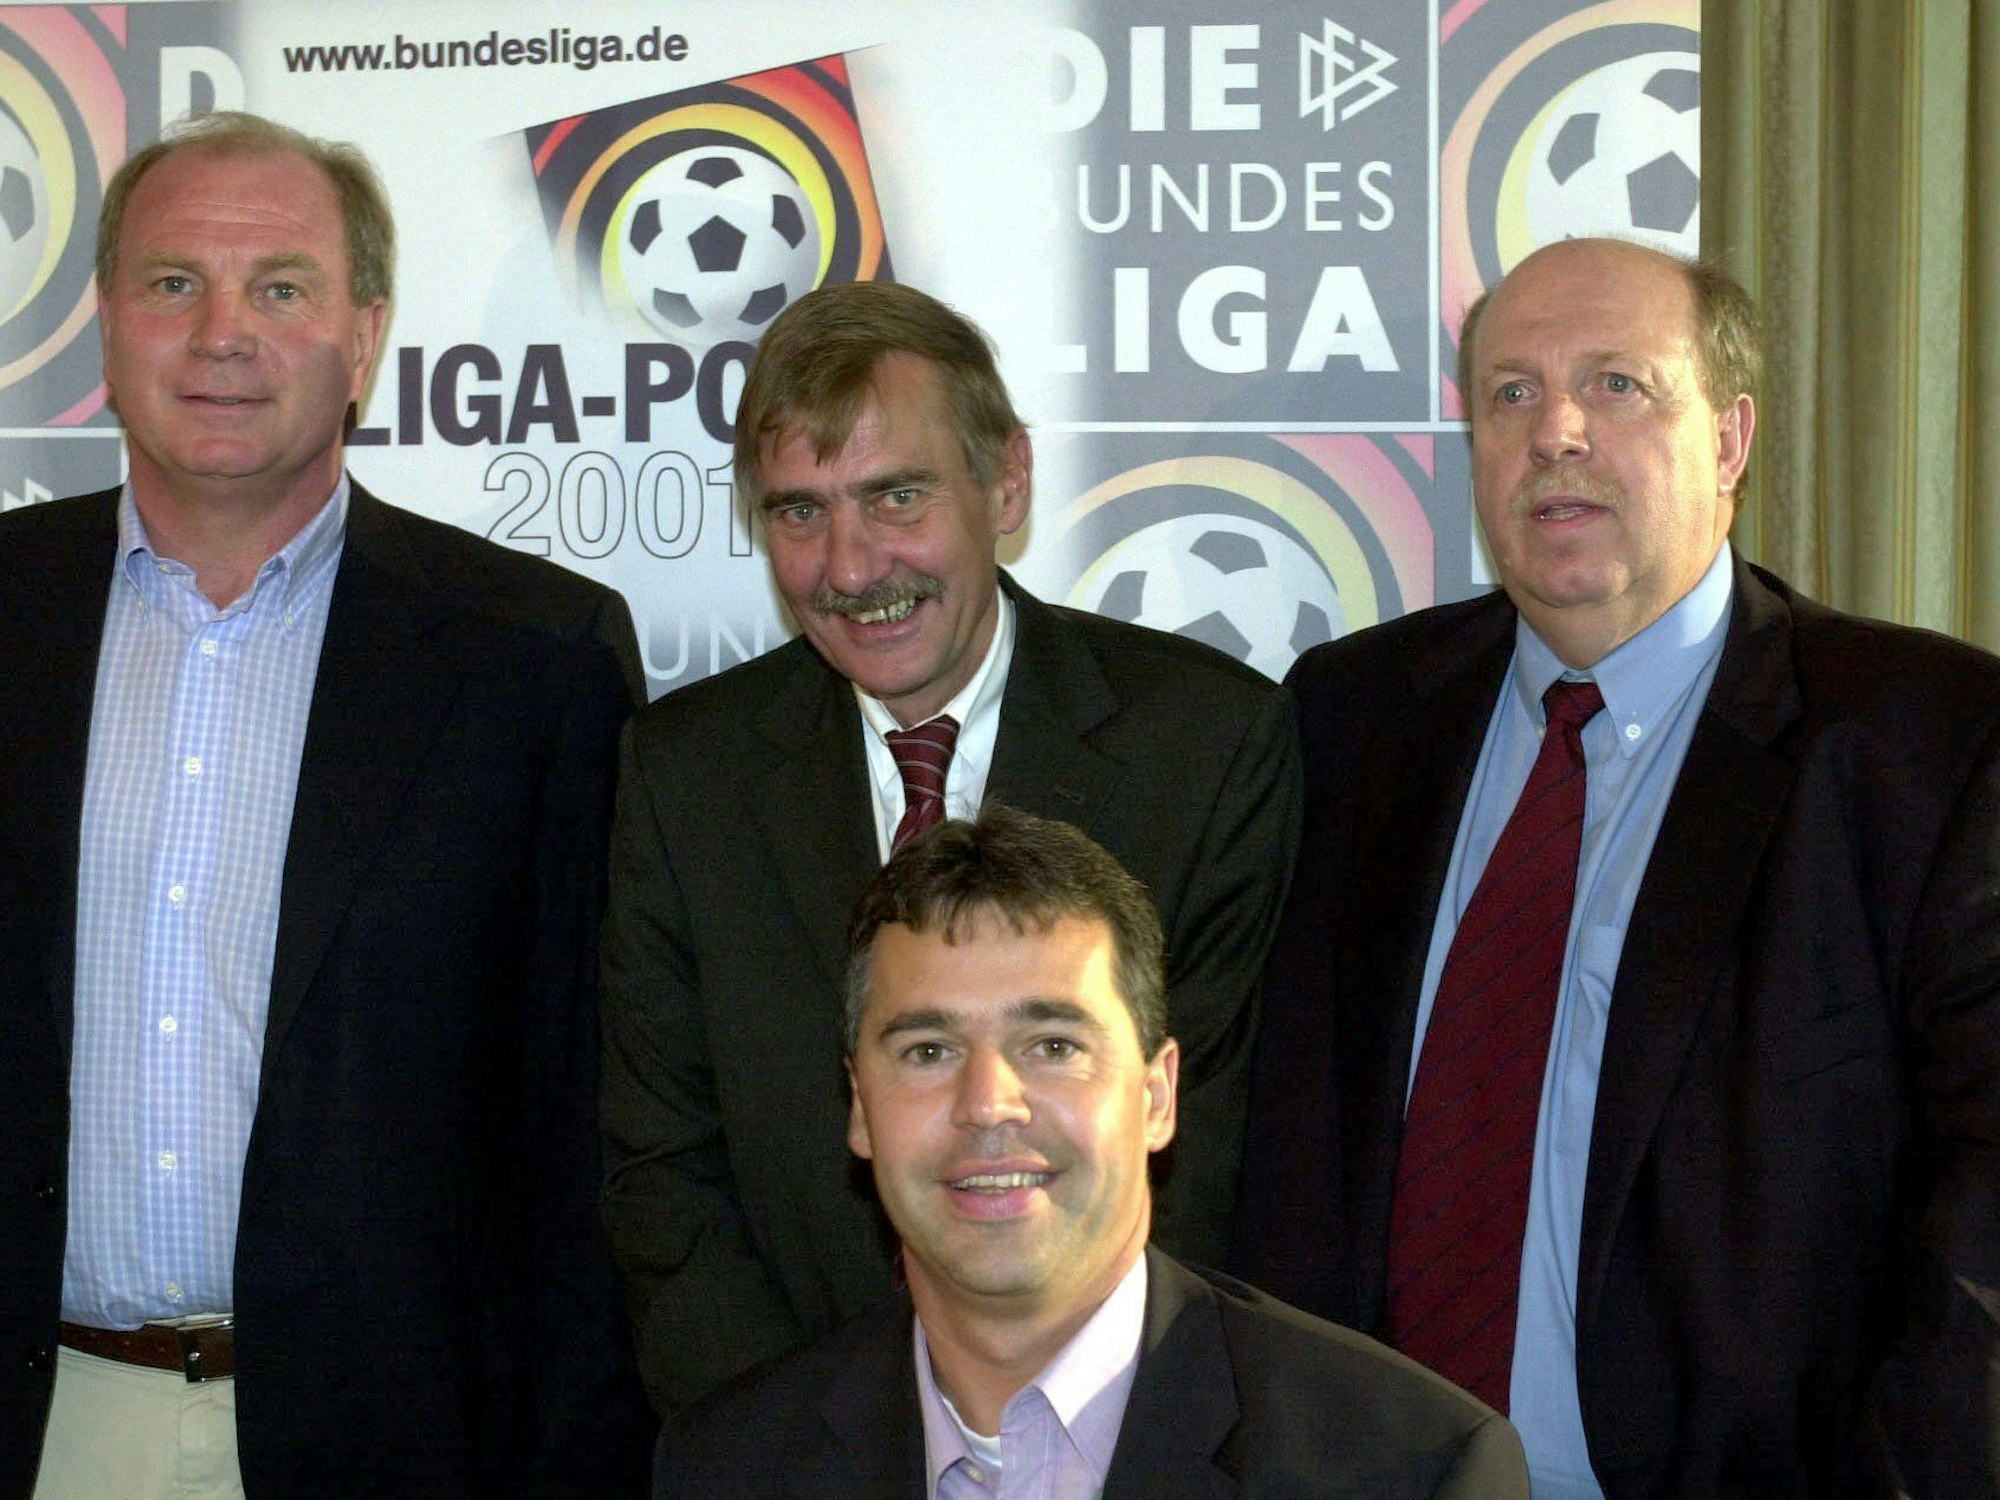 Andreas Rettig am 3. Juli 2001 mit Uli Hoeneß (FC Bayern), Werner Hackmann (DFL) und Reiner Calmund (Bayer Leverkusen).